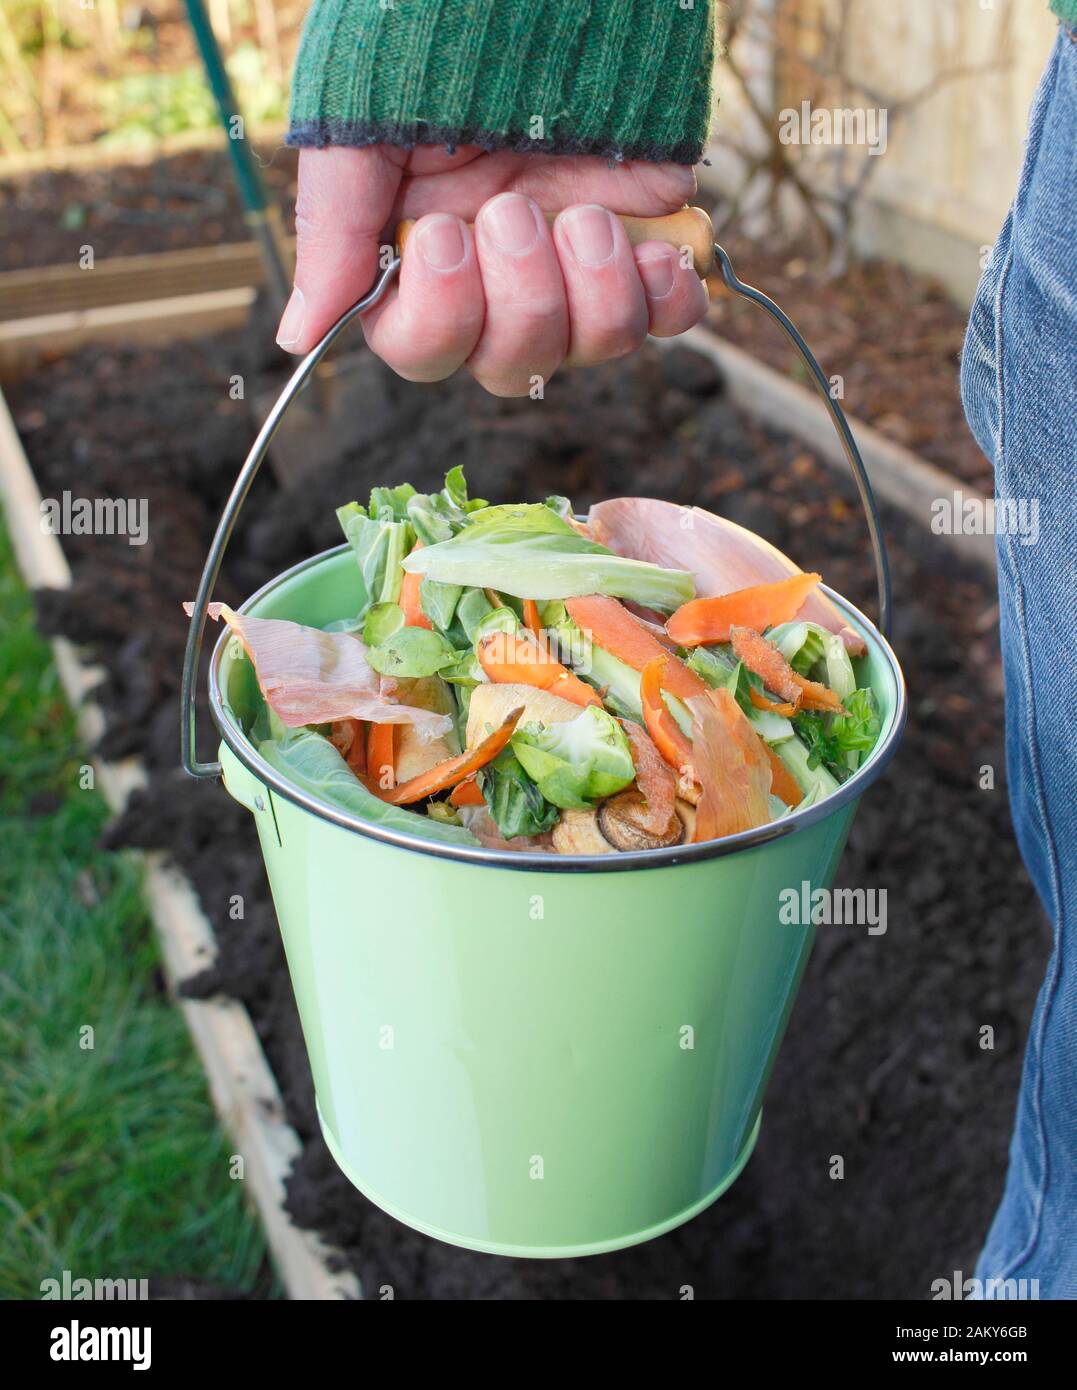 Rifiuti alimentari, come i peelings vegetali e di frutta, presi in un orto domestico per fare in compost. REGNO UNITO Foto Stock